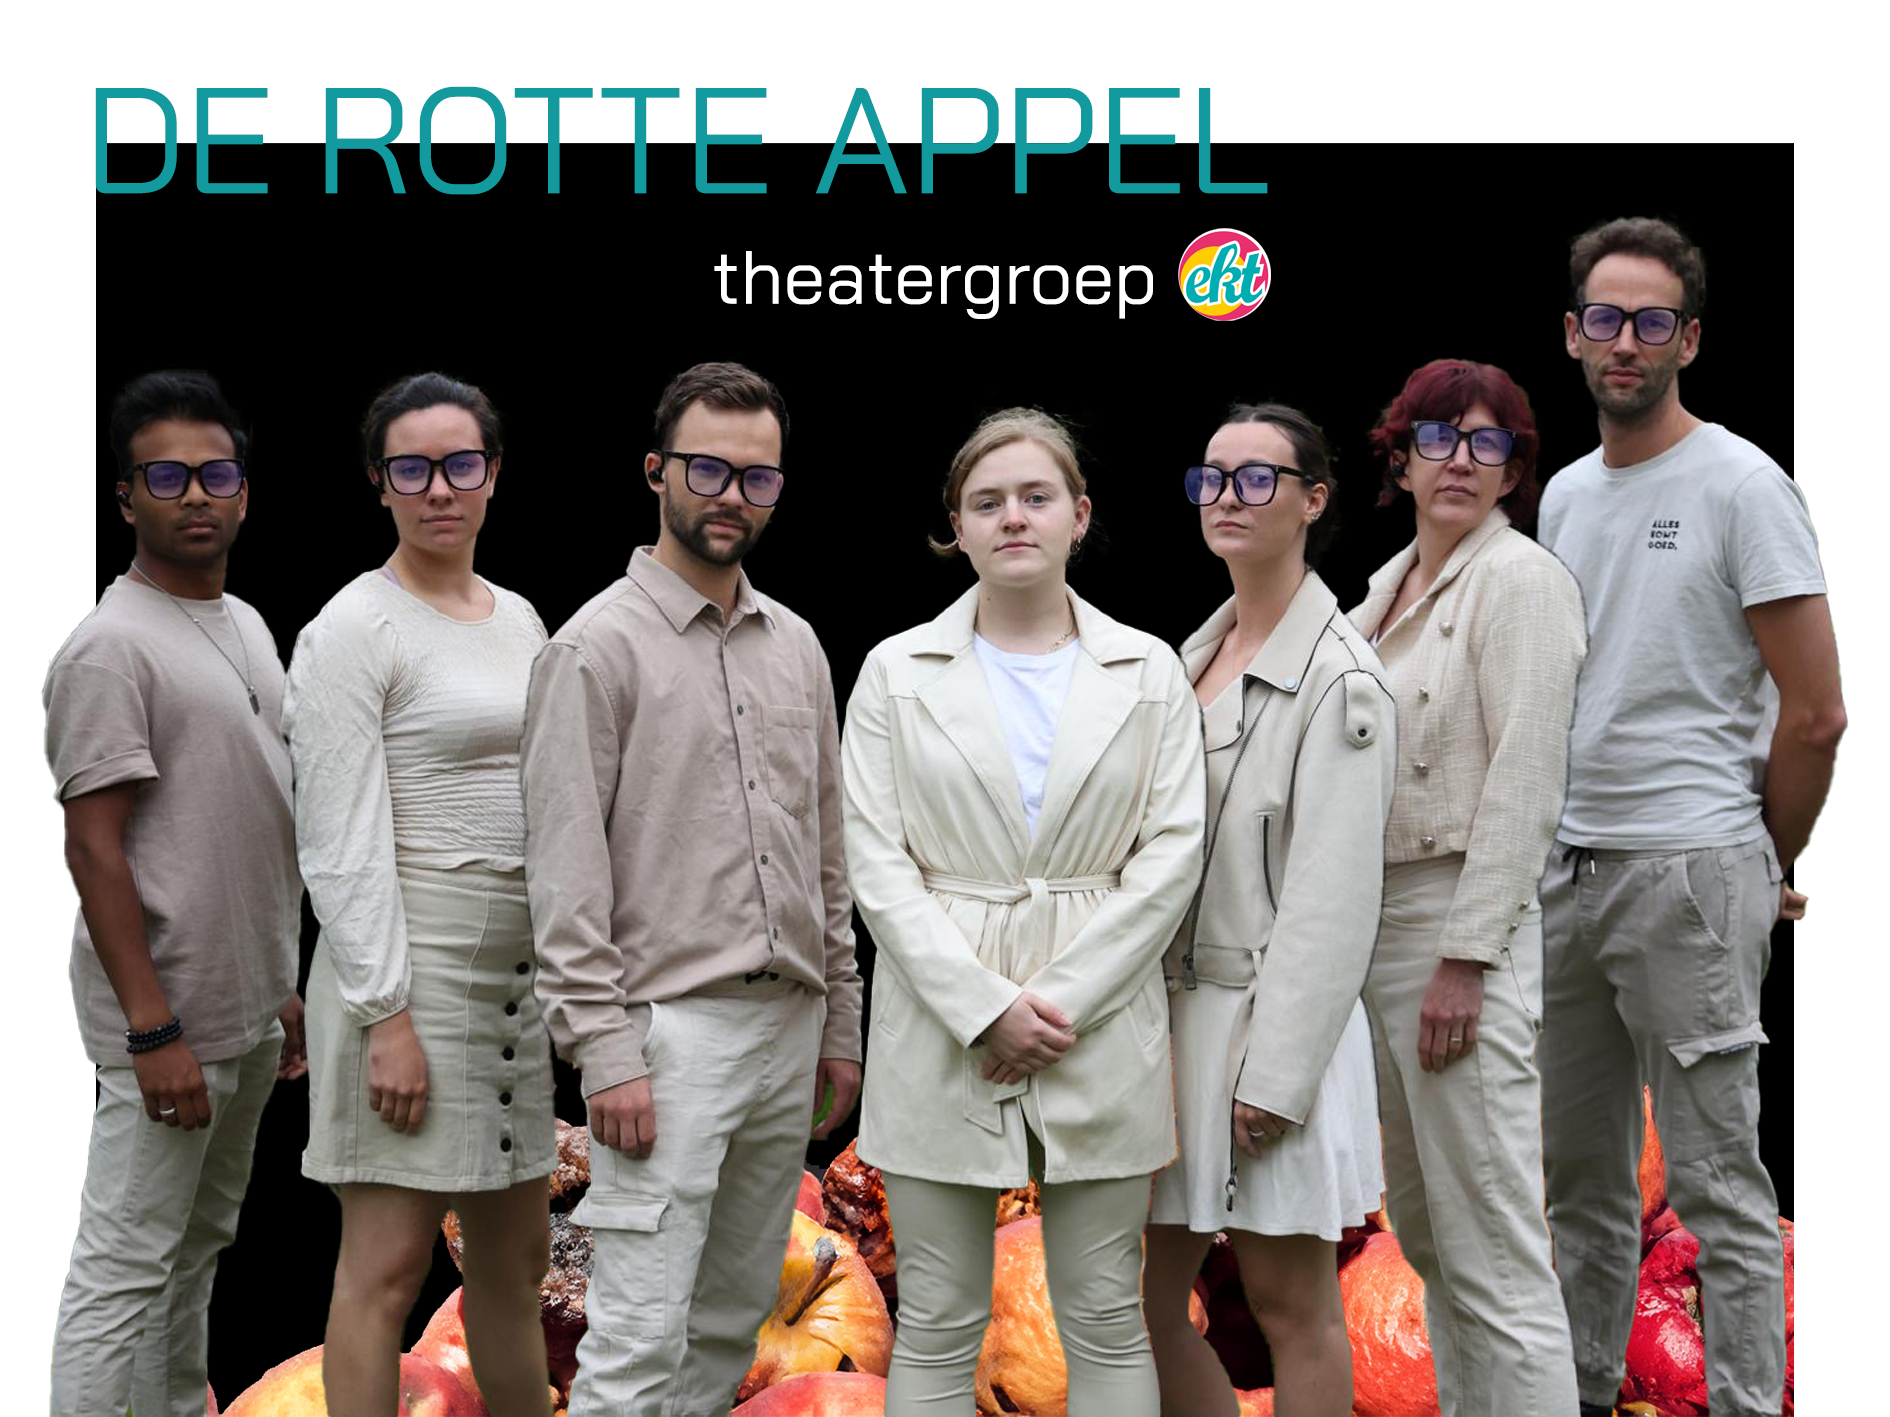 De rotte appel - Theatergroep Ekt (externe groep)